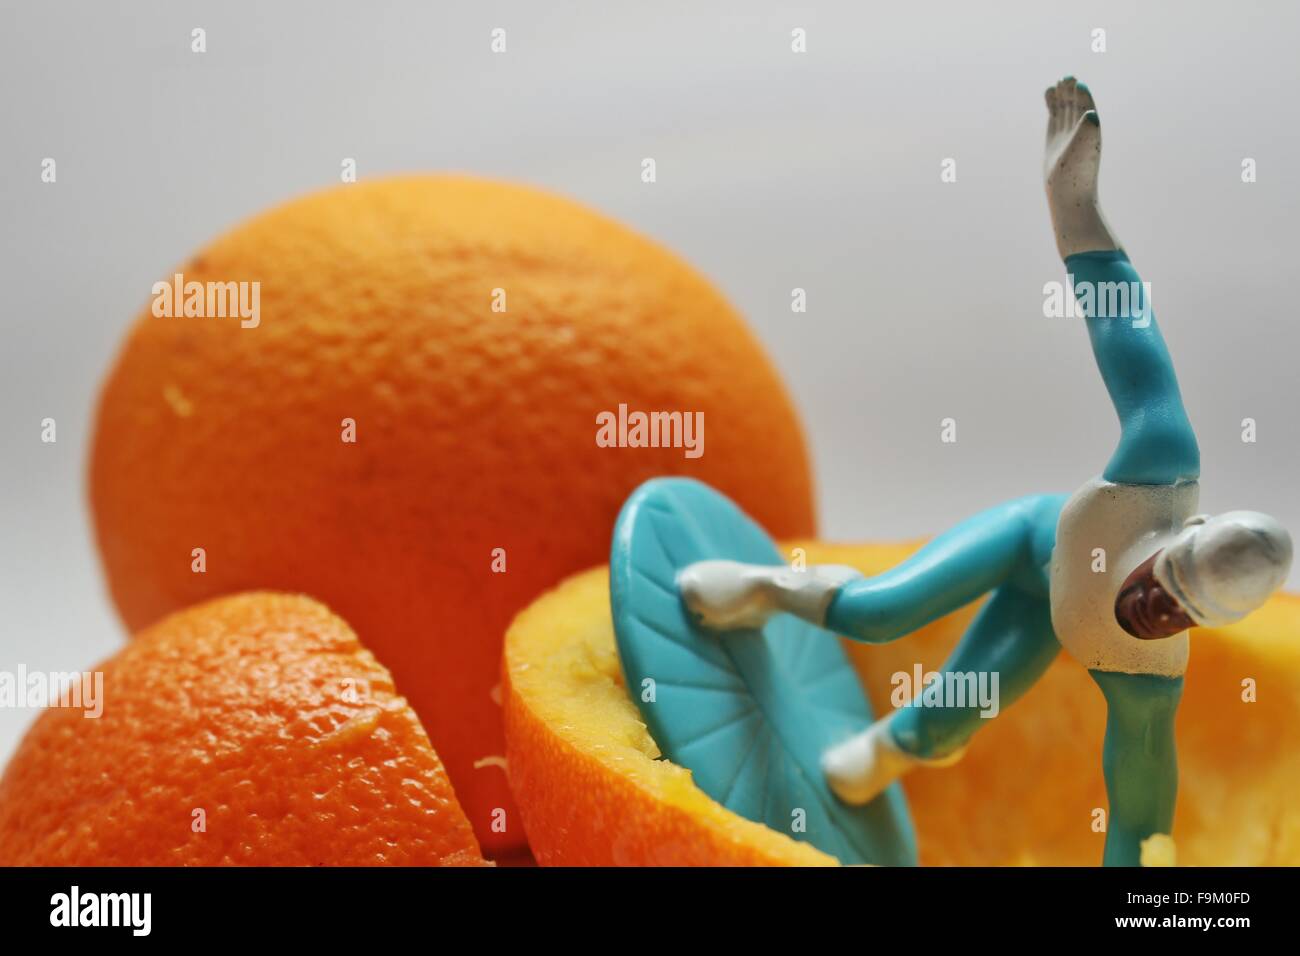 Un jouet montre quelques caractères se déplace dans un emballage orange Banque D'Images